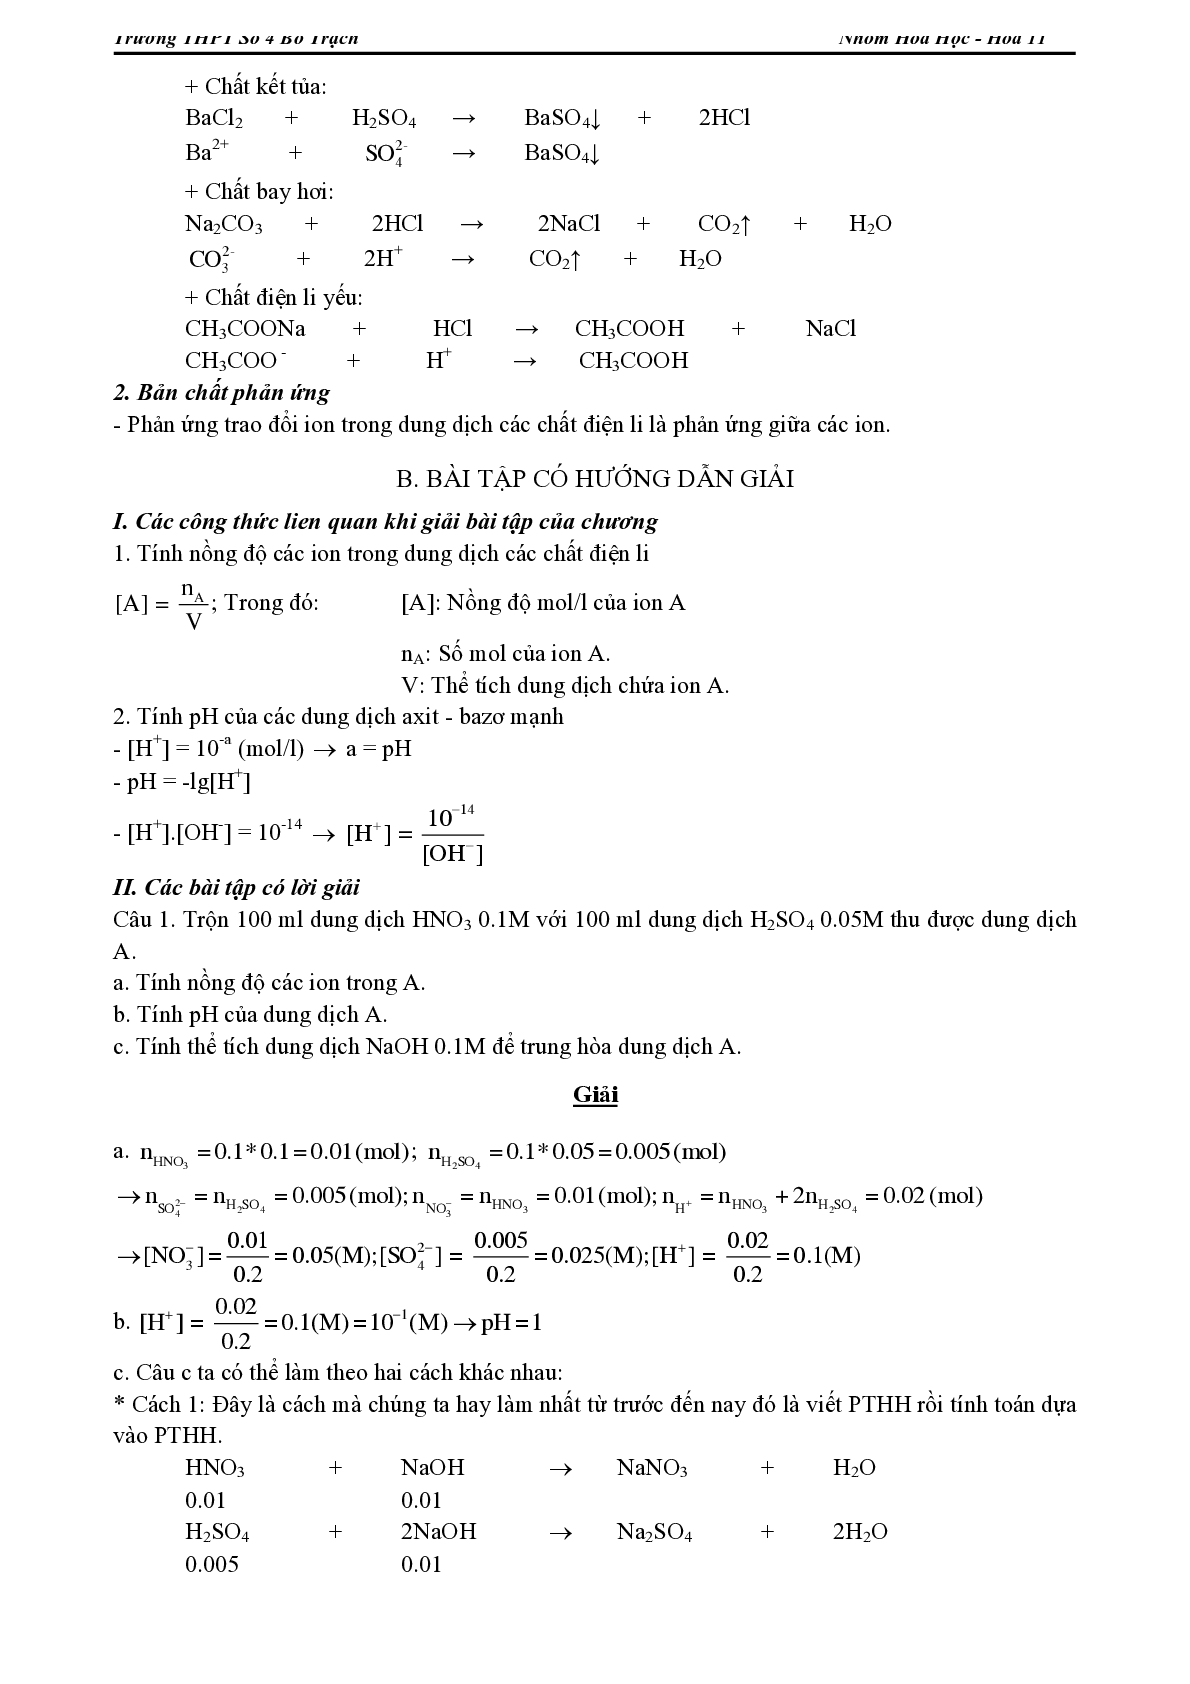 Lý thuyết, bài tập về Chương trình Hóa học lớp 11 có đáp án (trang 2)